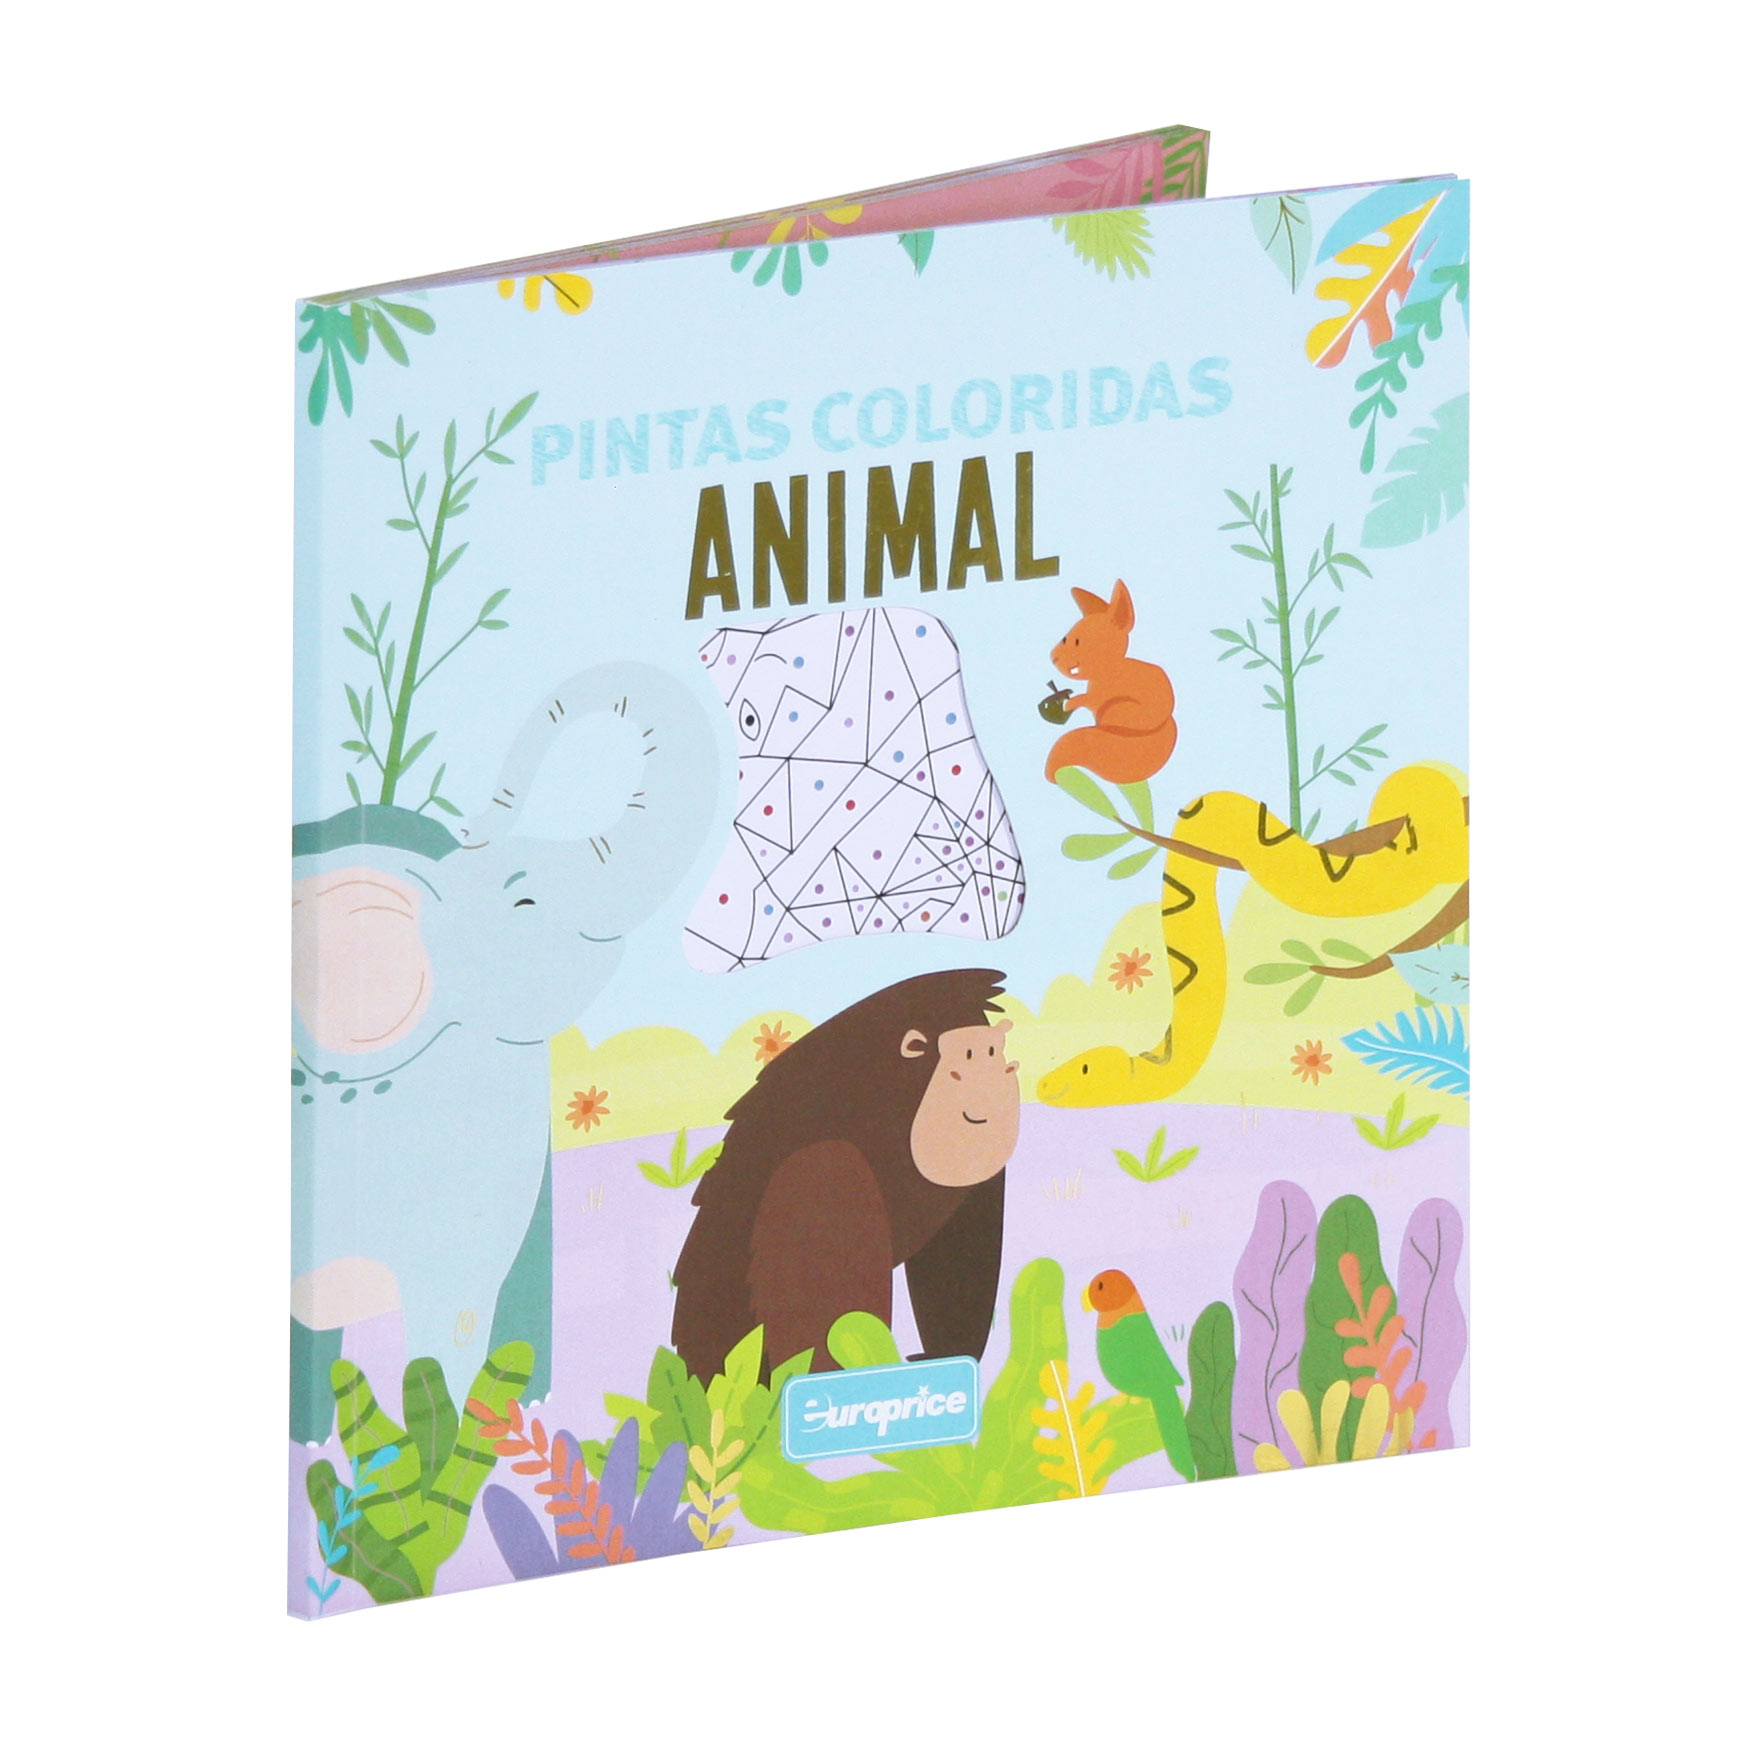 Livro Pintas Coloridas - Animal. A capa mostra vários Animais coloridos na natureza, com detalhes a dourado e um recorte no meio, que mostra a primeira página.